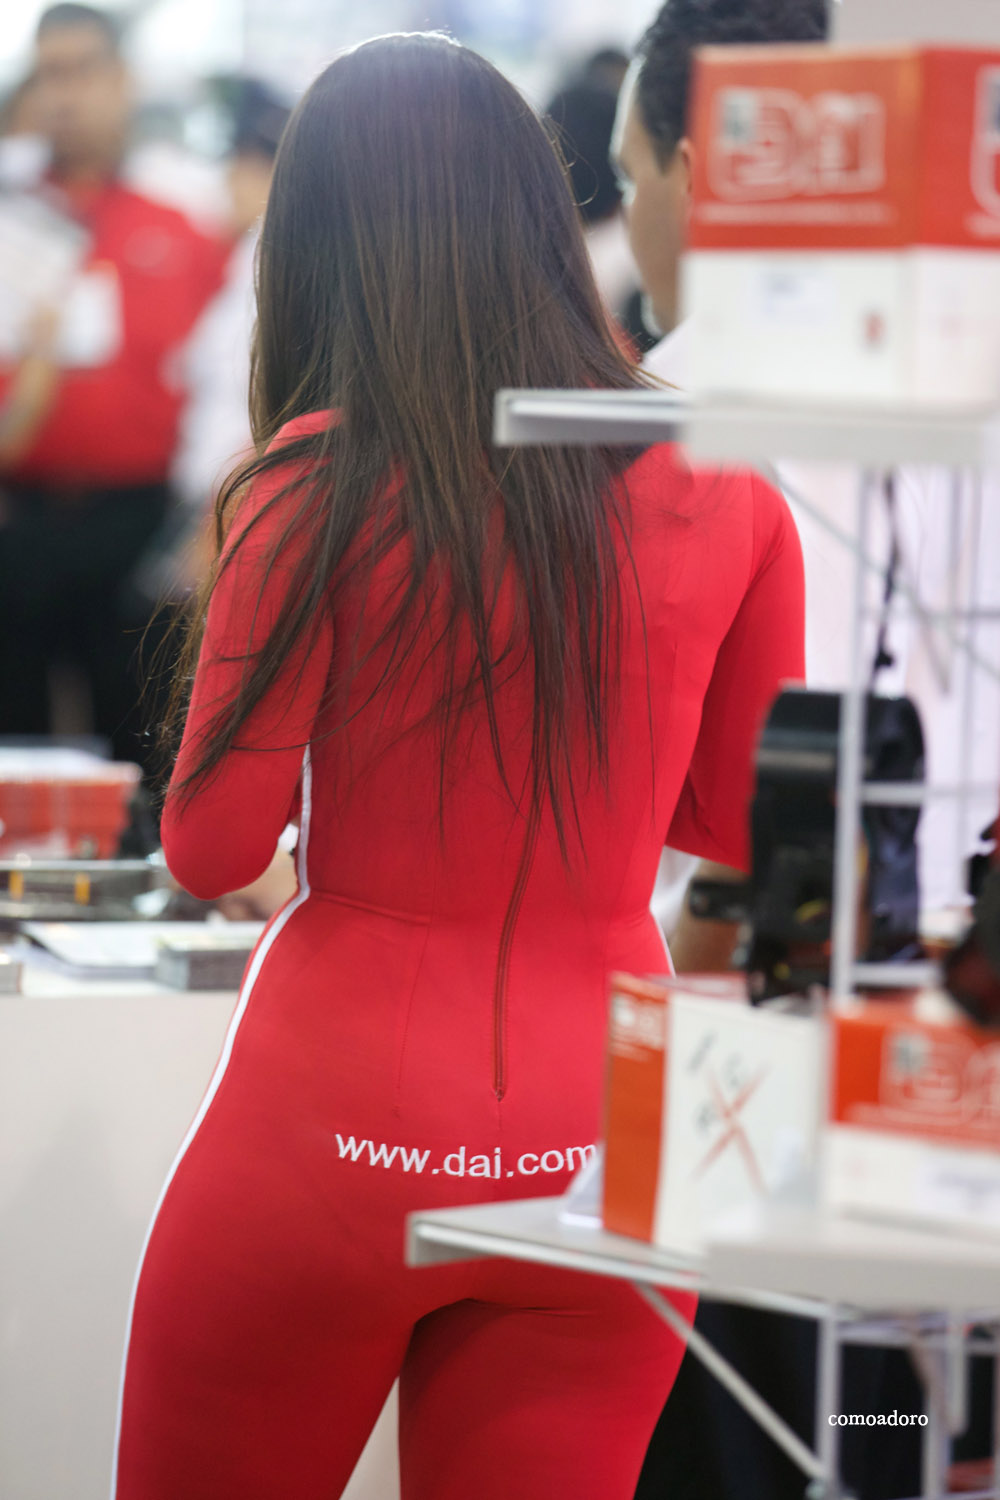 promo girl in red spandex (14).jpg